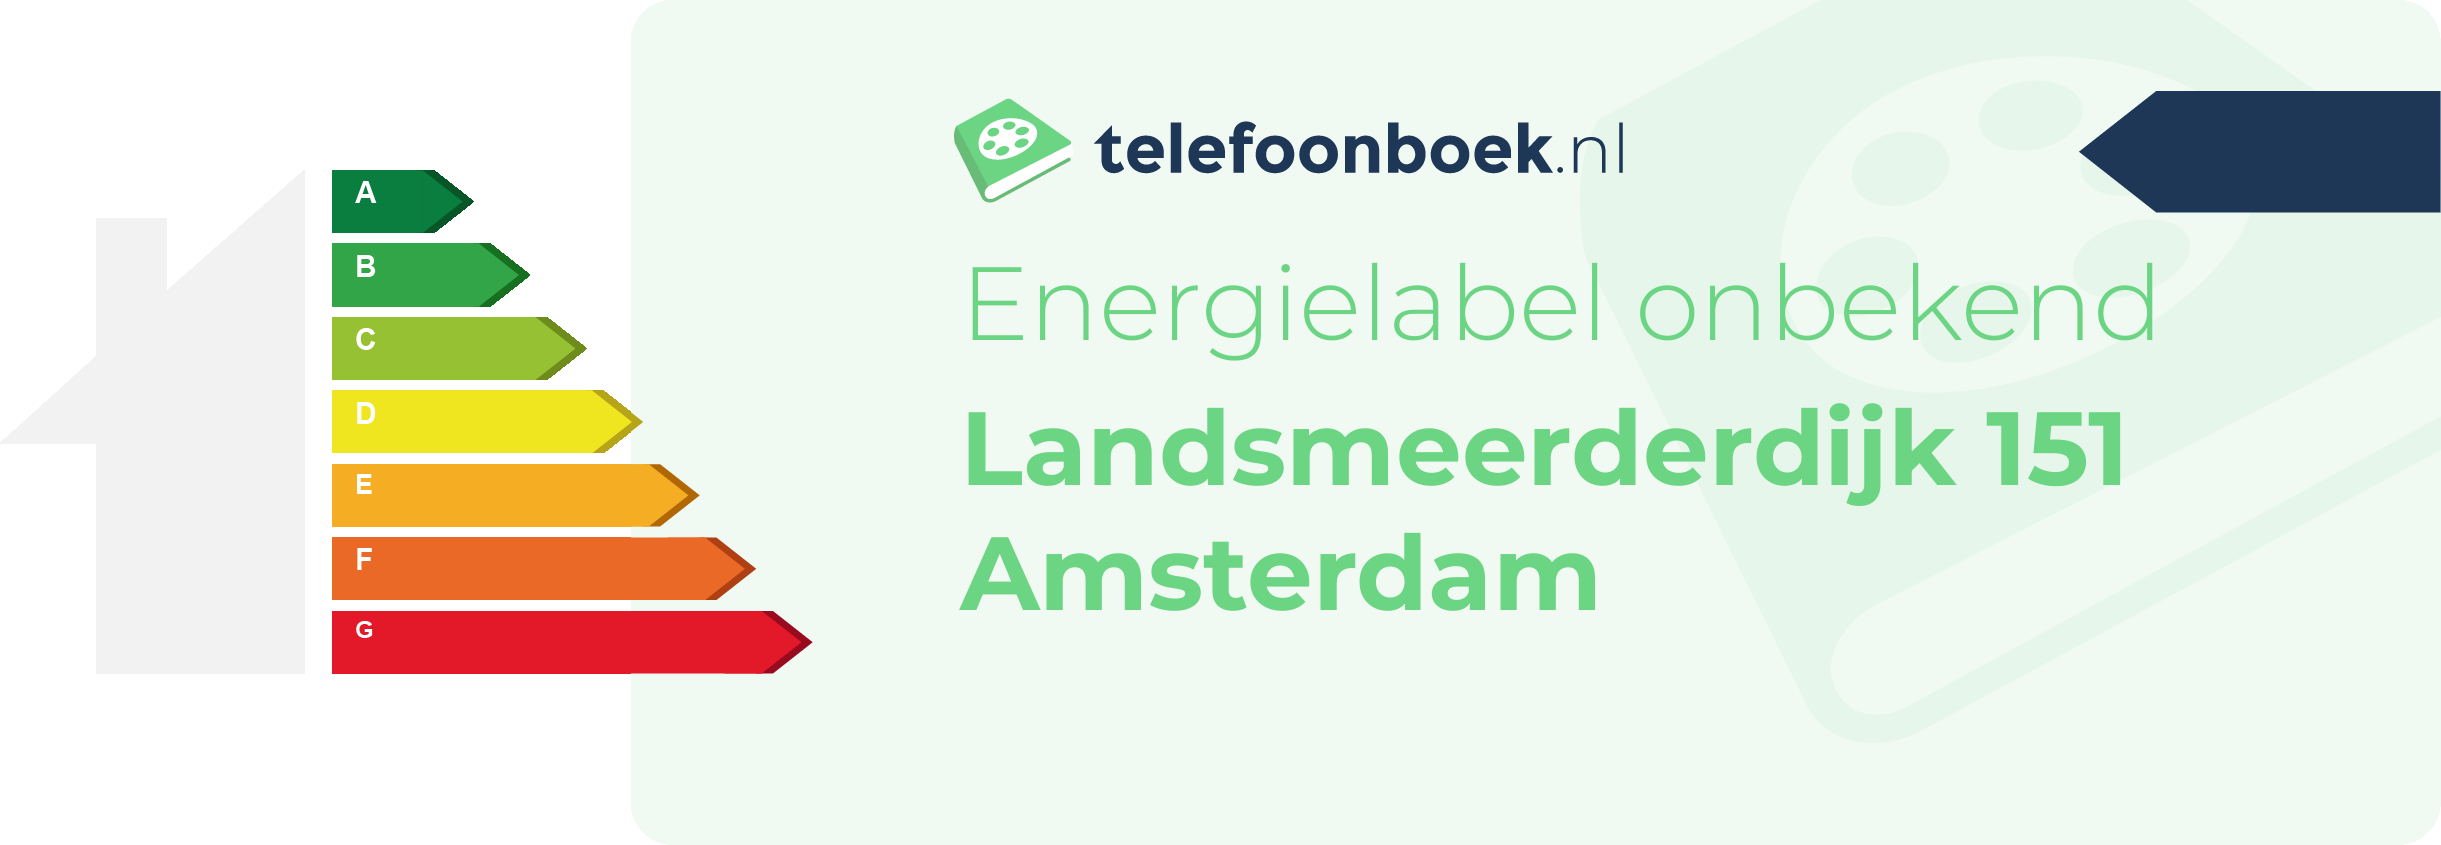 Energielabel Landsmeerderdijk 151 Amsterdam